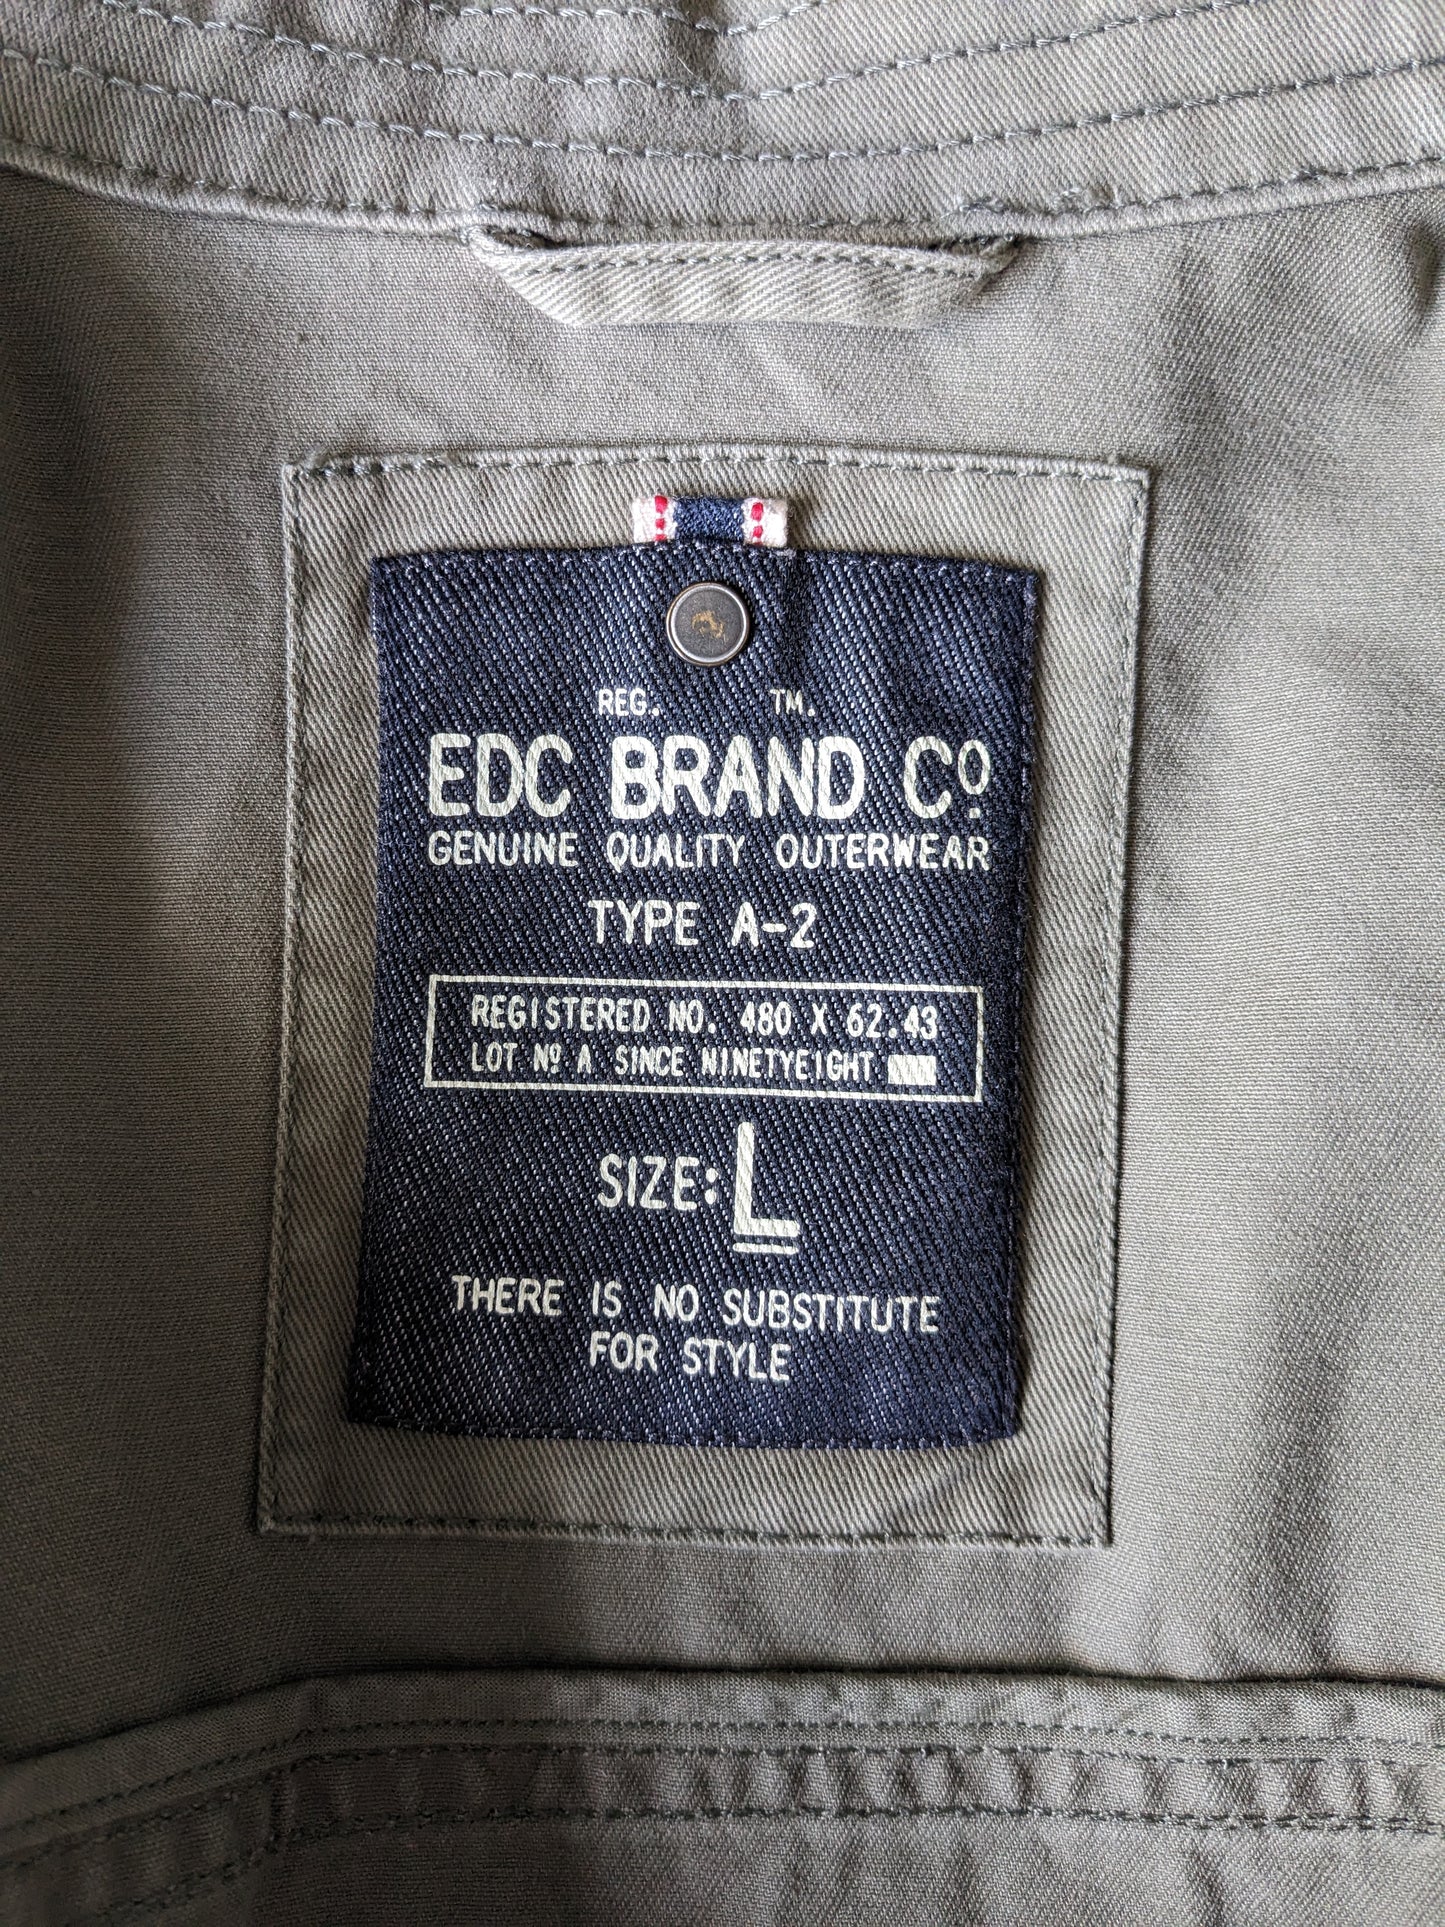 Giacca / giacca estiva EDC con bottoni. Verde colorato. Taglia L.